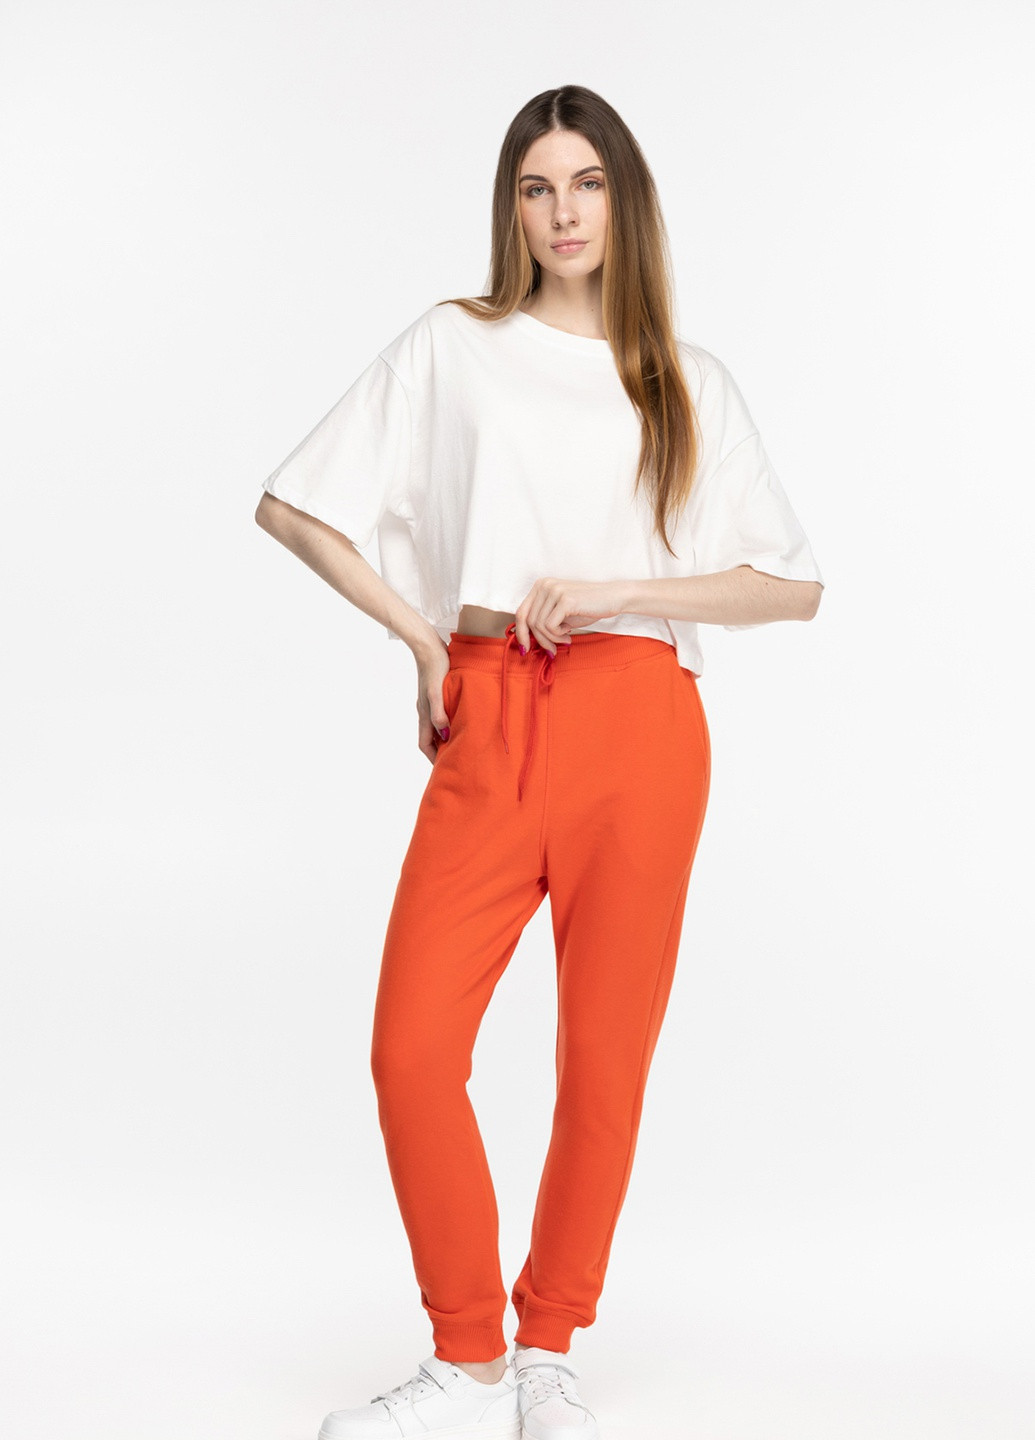 Оранжевые спортивные демисезонные брюки MMS